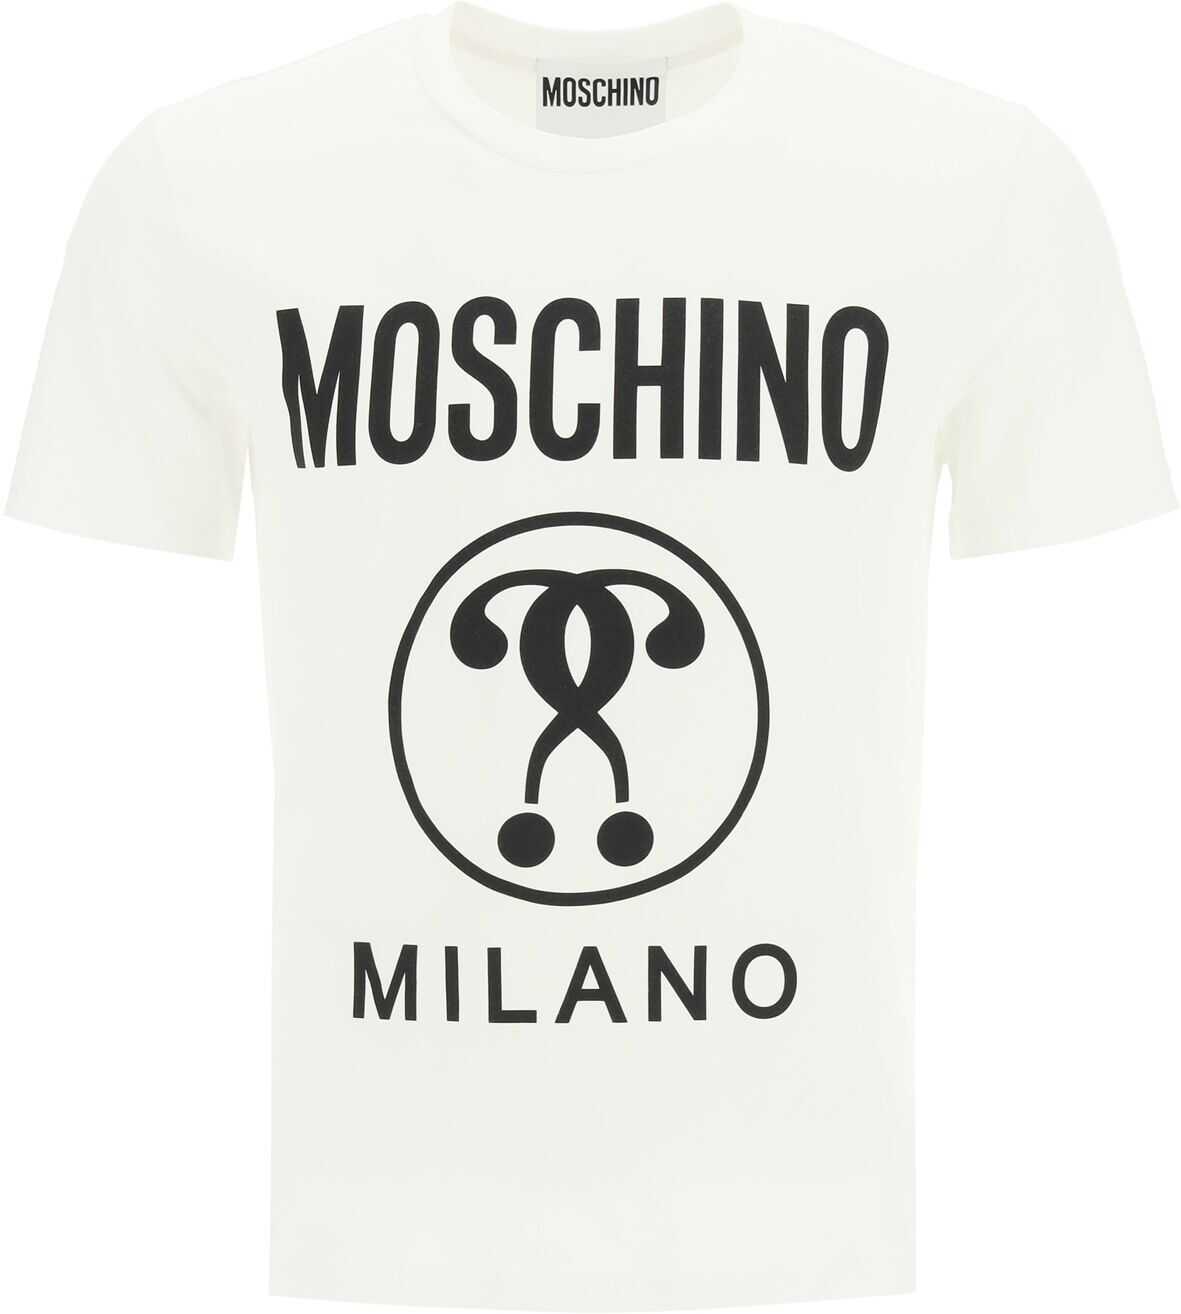 Moschino Double Question Mark T-Shirt 0712 7039 FANTASIA BIANCO